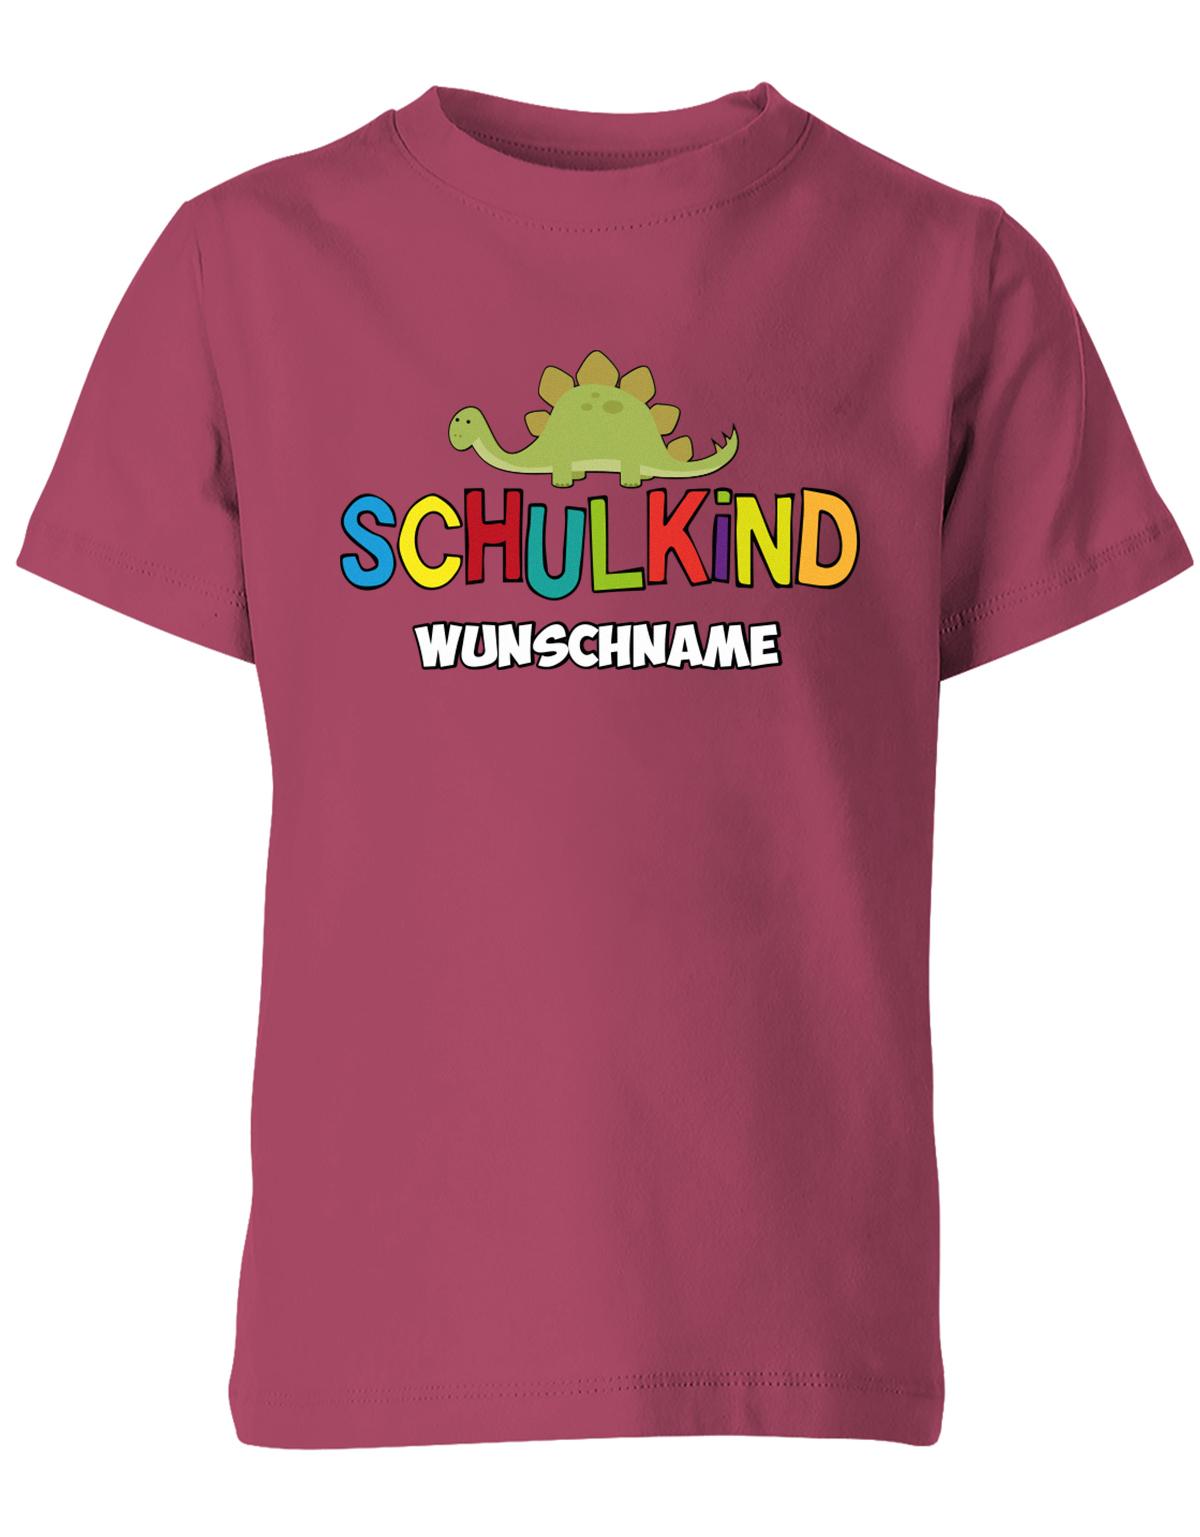 Schulkind - Dino - 1. Klasse Geschenk zur Einschulung mit Name - Kinder T-Shirt Sorbet